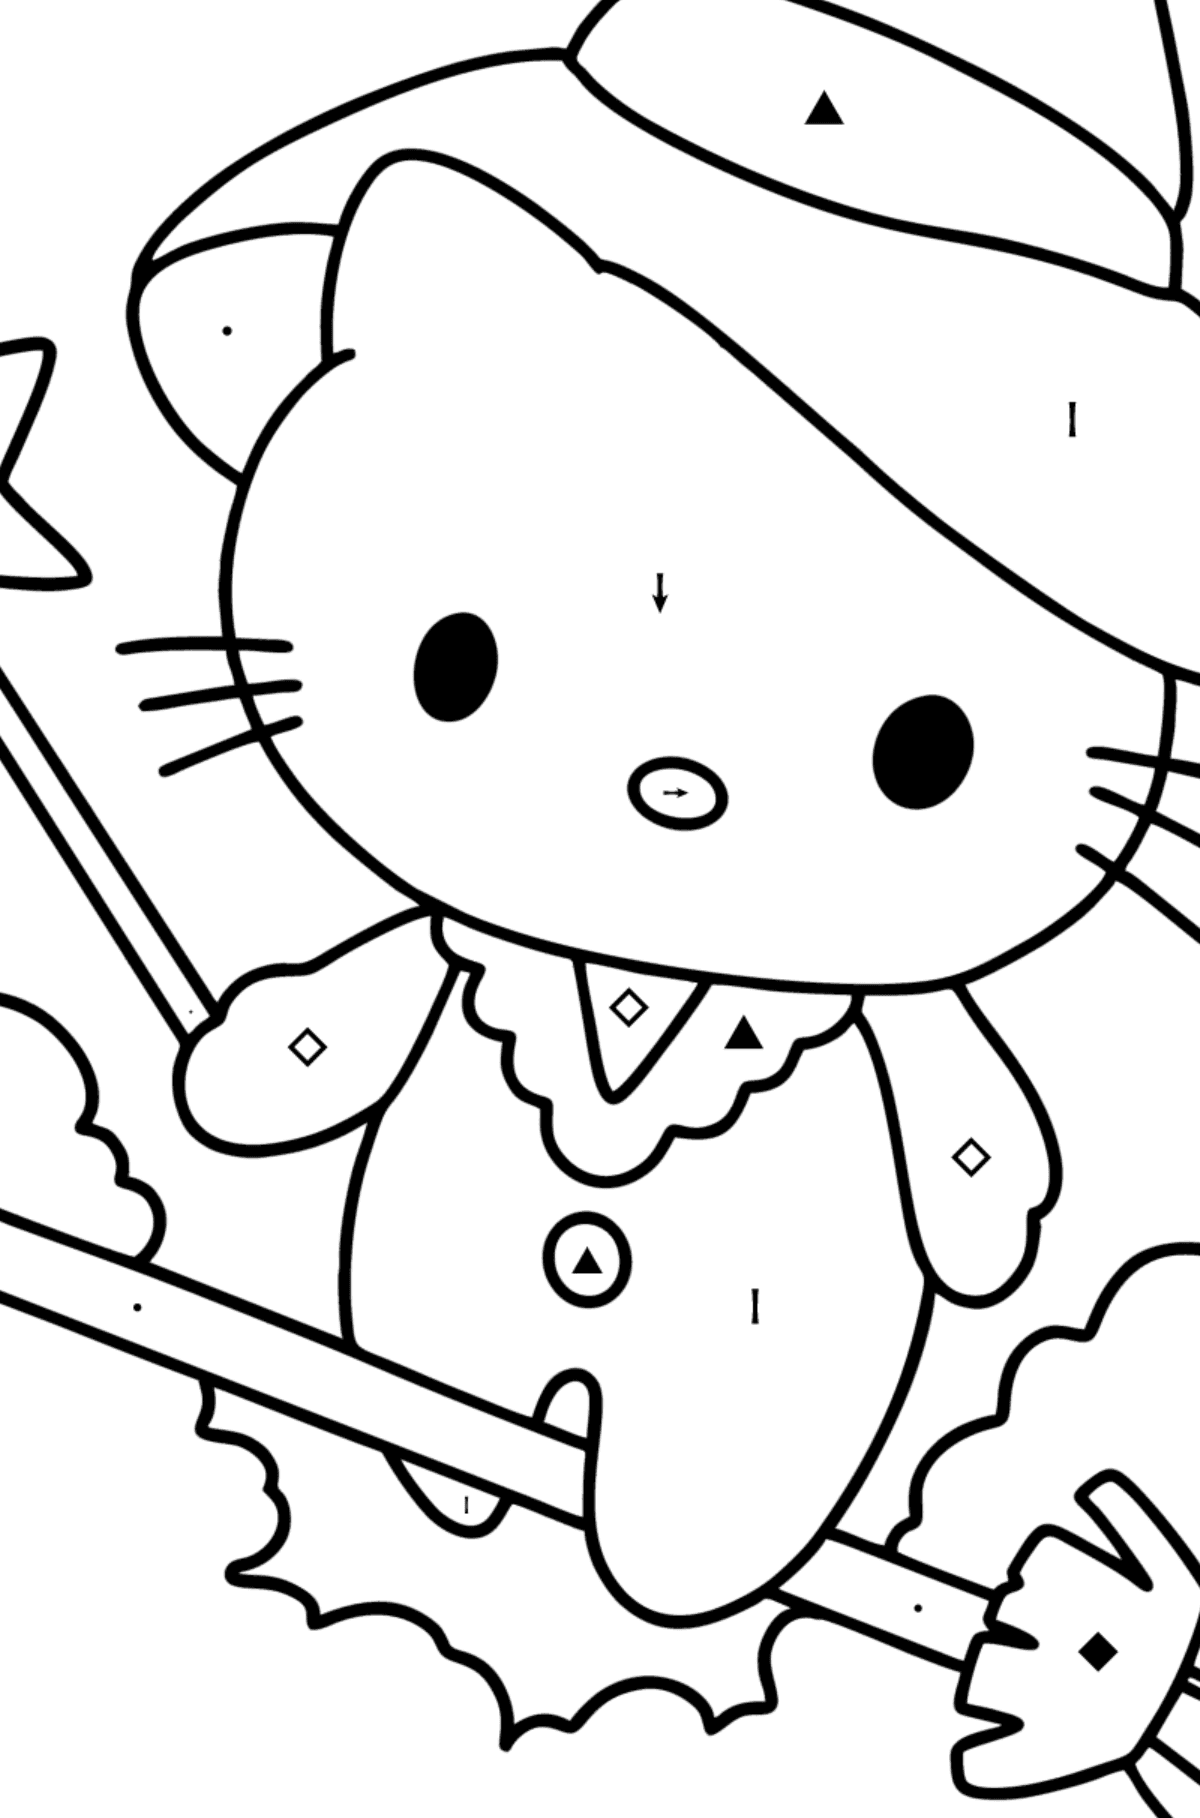 Boyama sayfası Hello Kitty cadılar bayramı - Sembollerle Boyama çocuklar için